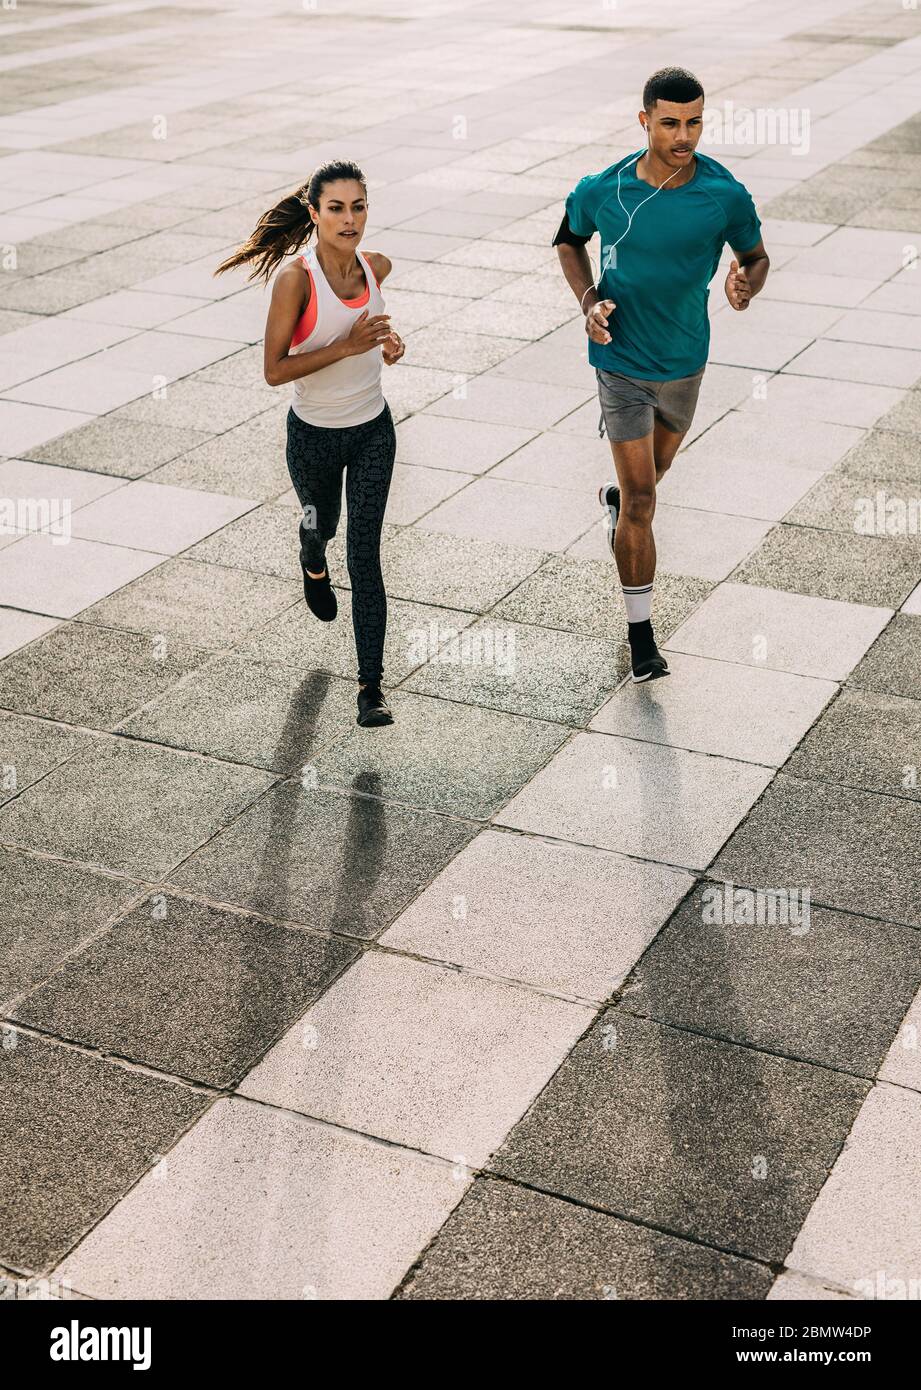 Coppia in allenamento sportivo insieme in città. Uomo e donna sportivi che corrono insieme in città. Foto Stock